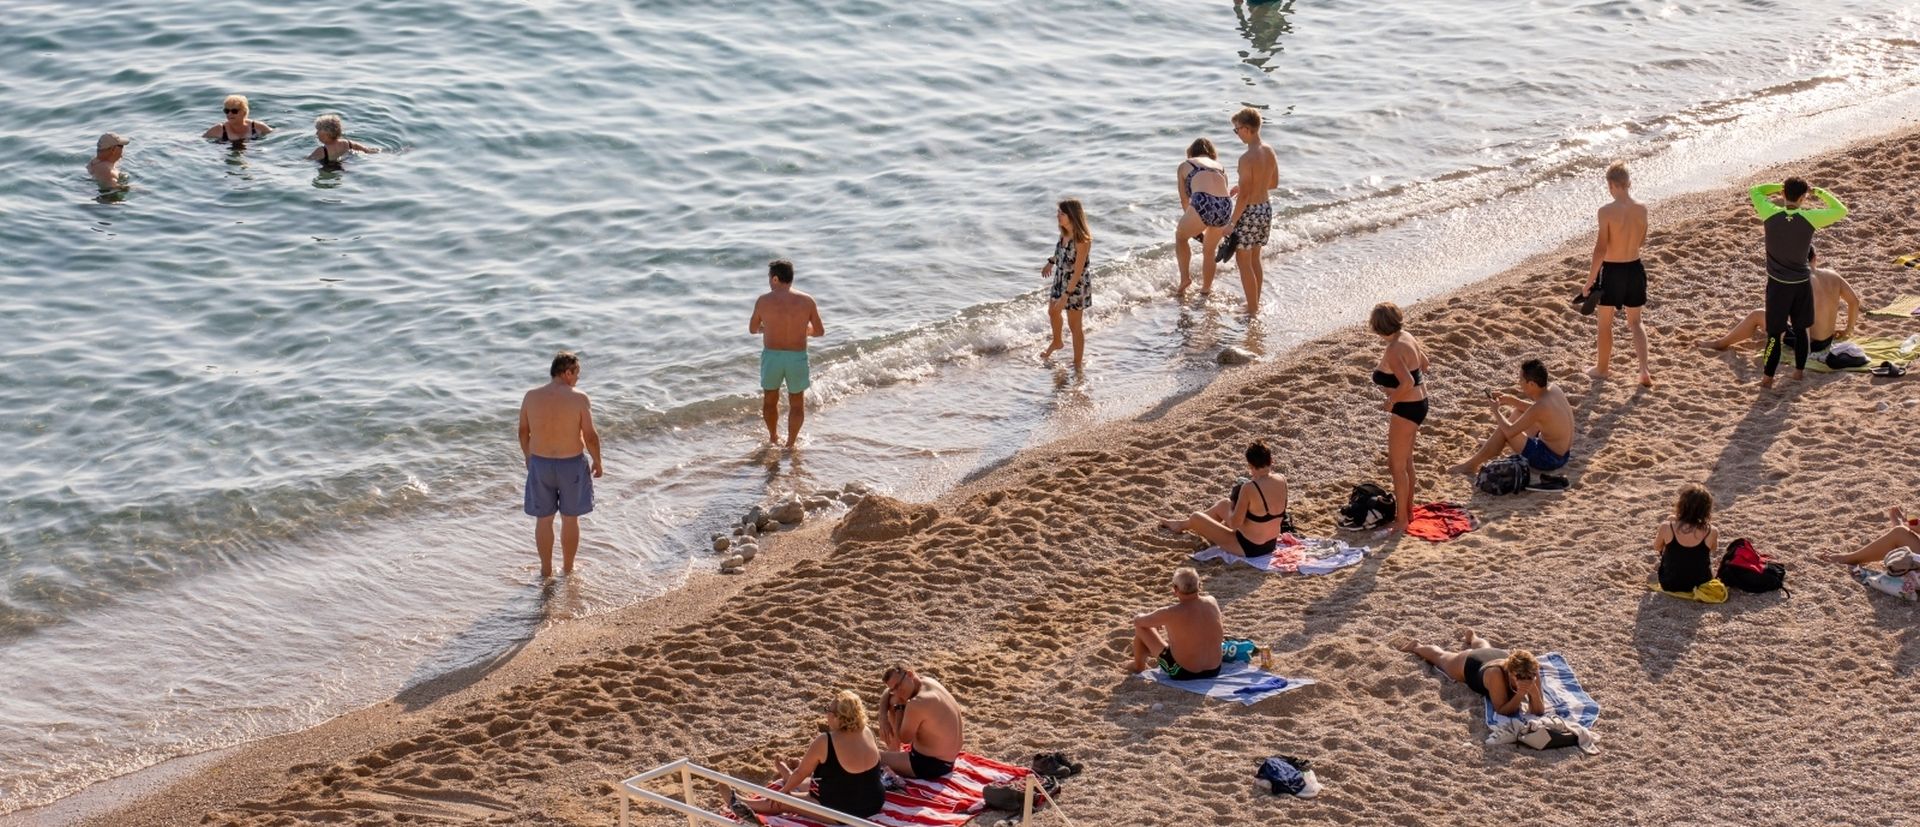 17.10.2019.,PLaza Banje, Dubrovnik - Lijepo vrijeme s izrazito ugodnim temperaturama omogucuje kupanje u drugoj polovici Listopada.
Photo: Grgo Jelavic/PIXSELL